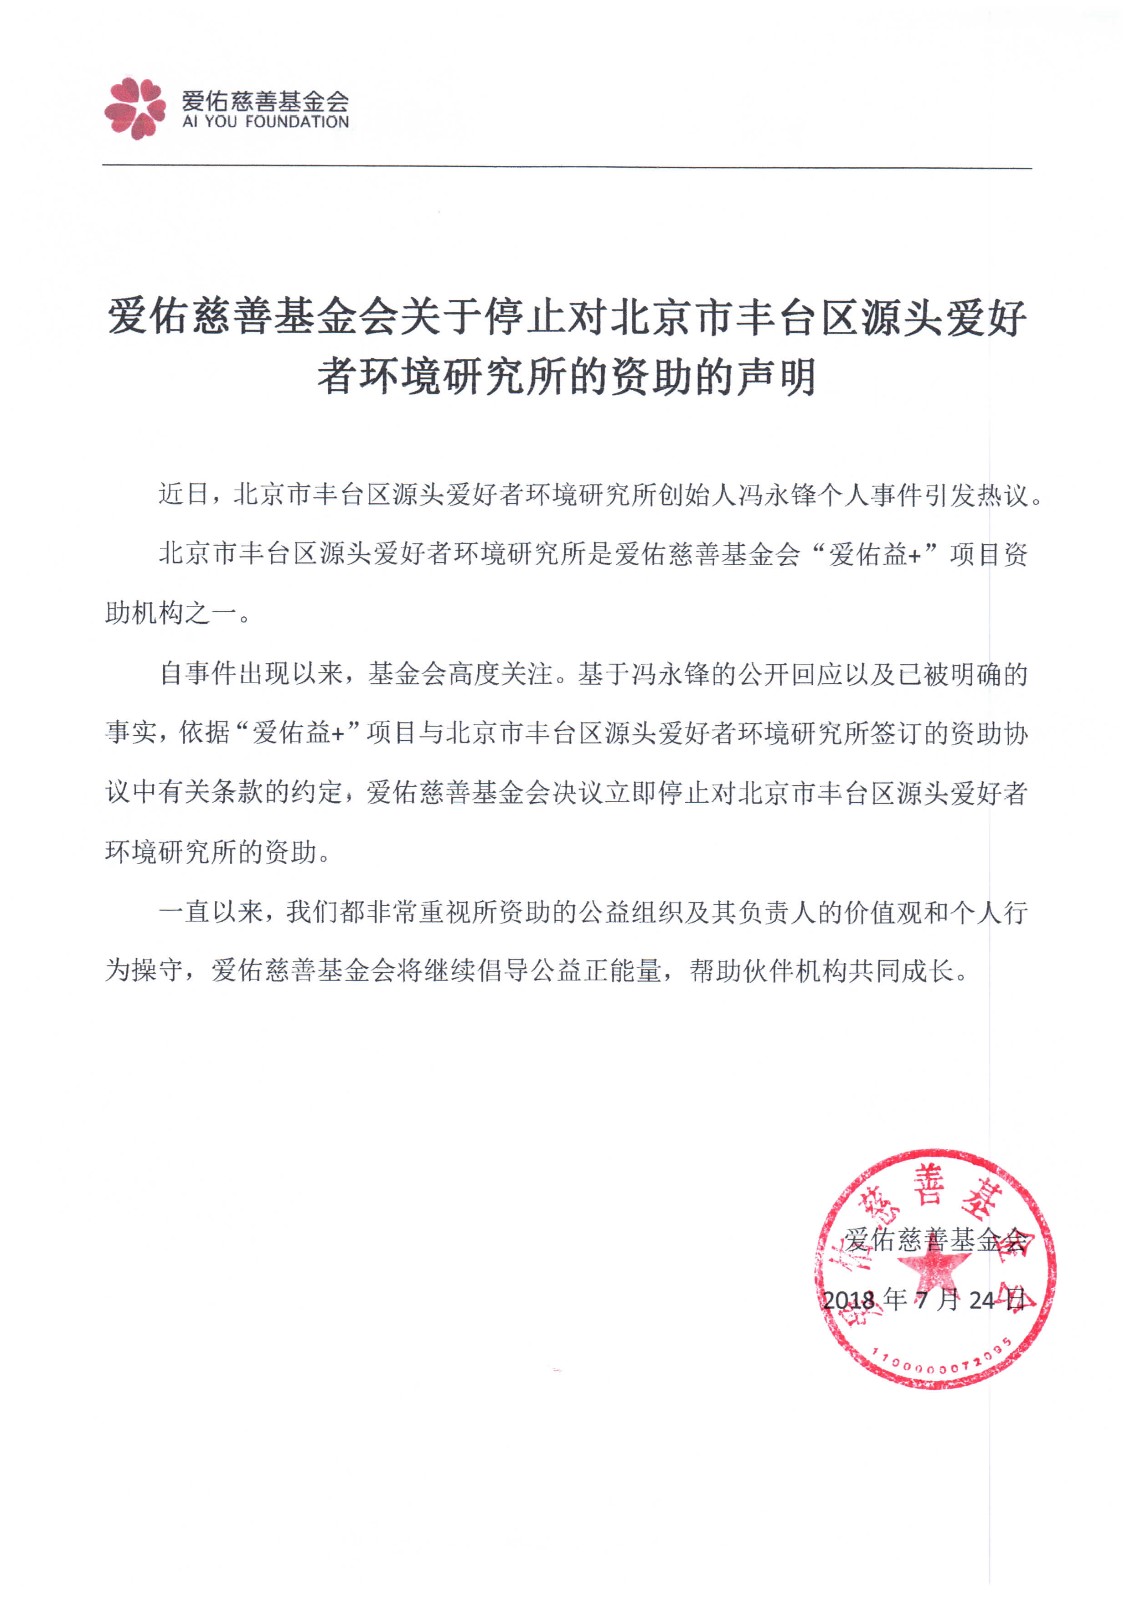 爱佑慈善基金会关于停止对北京市丰台区源头爱好者环境研究所的资助的声明.jpg